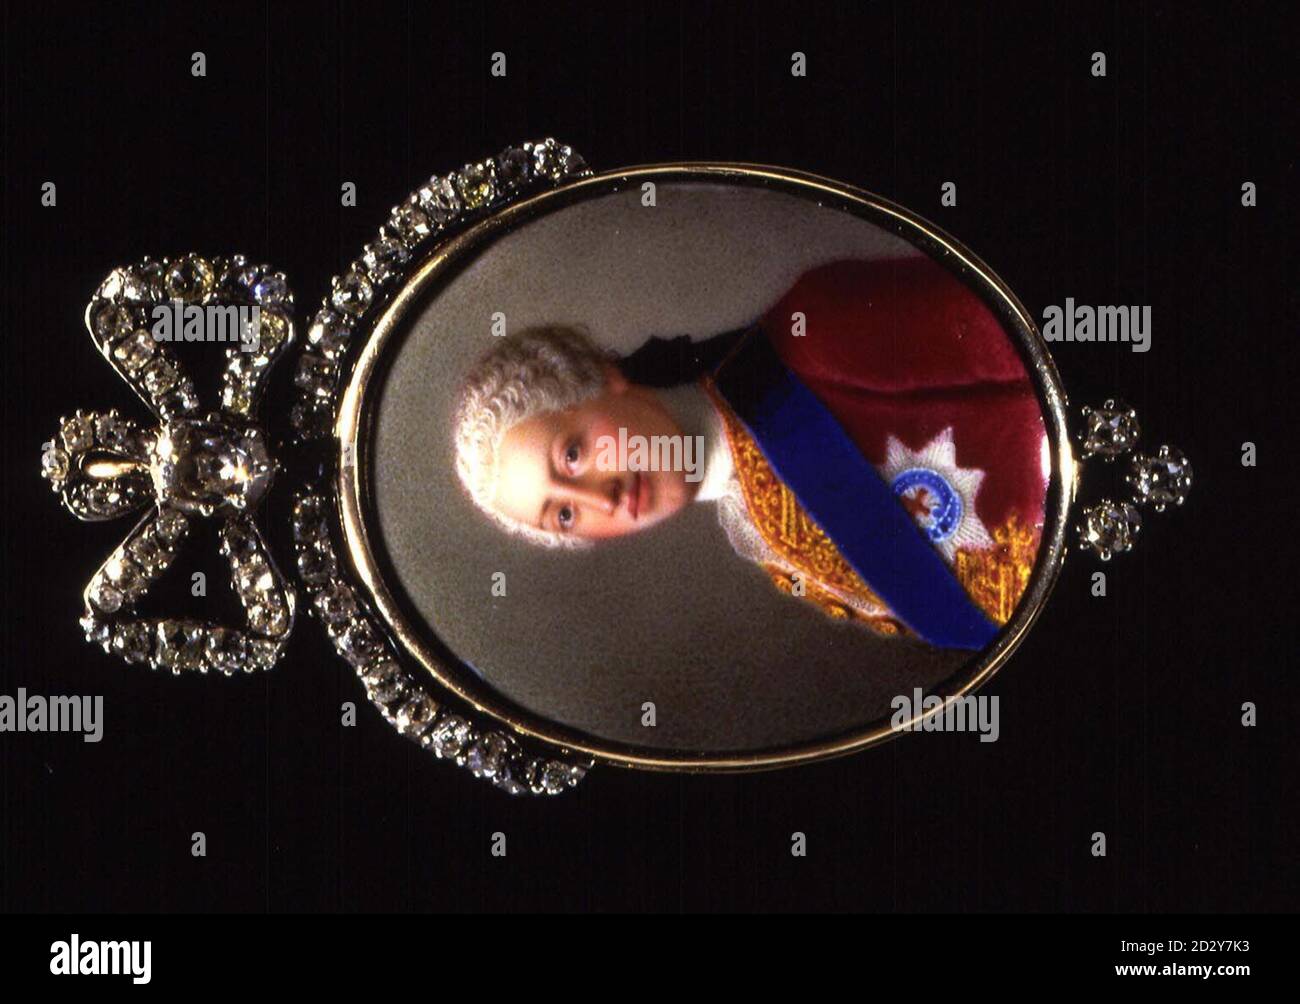 VERSIÓN CORREGIDA una nueva miniatura descubierta de George III, como el Príncipe de Gales. El raro y exquisito esmalte, uno de los cinco únicos ejemplos grabados de miniaturas pintadas por el artista suizo del siglo XVIII Jean-Etienne Liotard. La miniatura FETCH 128,000 en Christie's en Londres hoy (martes), más del doble del valor estimado. Mira las fotos de PA. Foto de stock